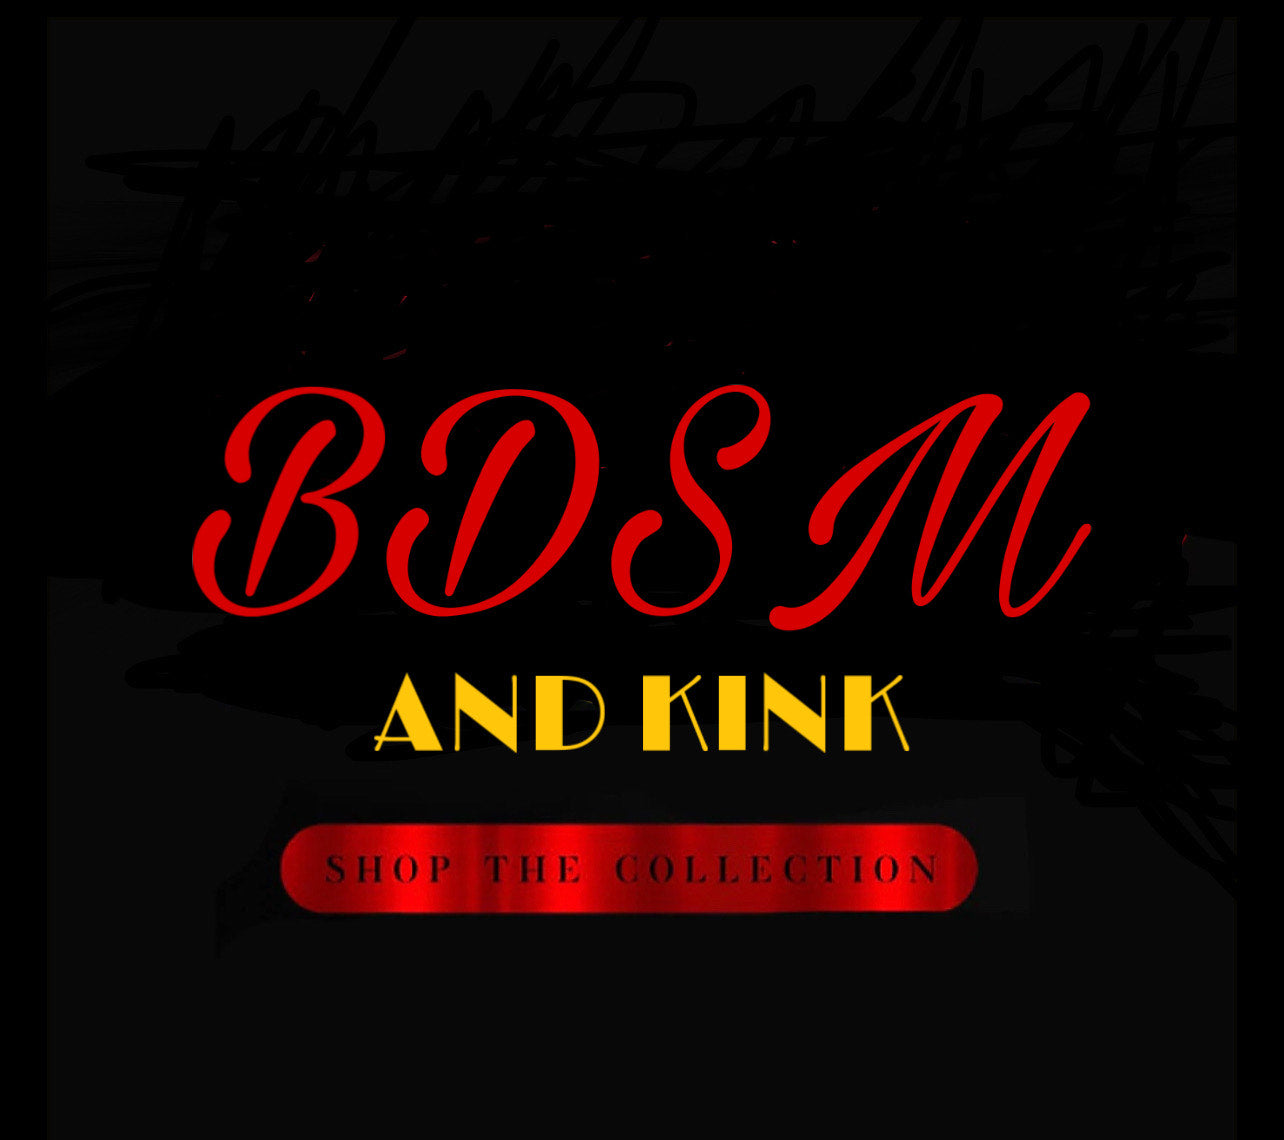 BDSM & Kink